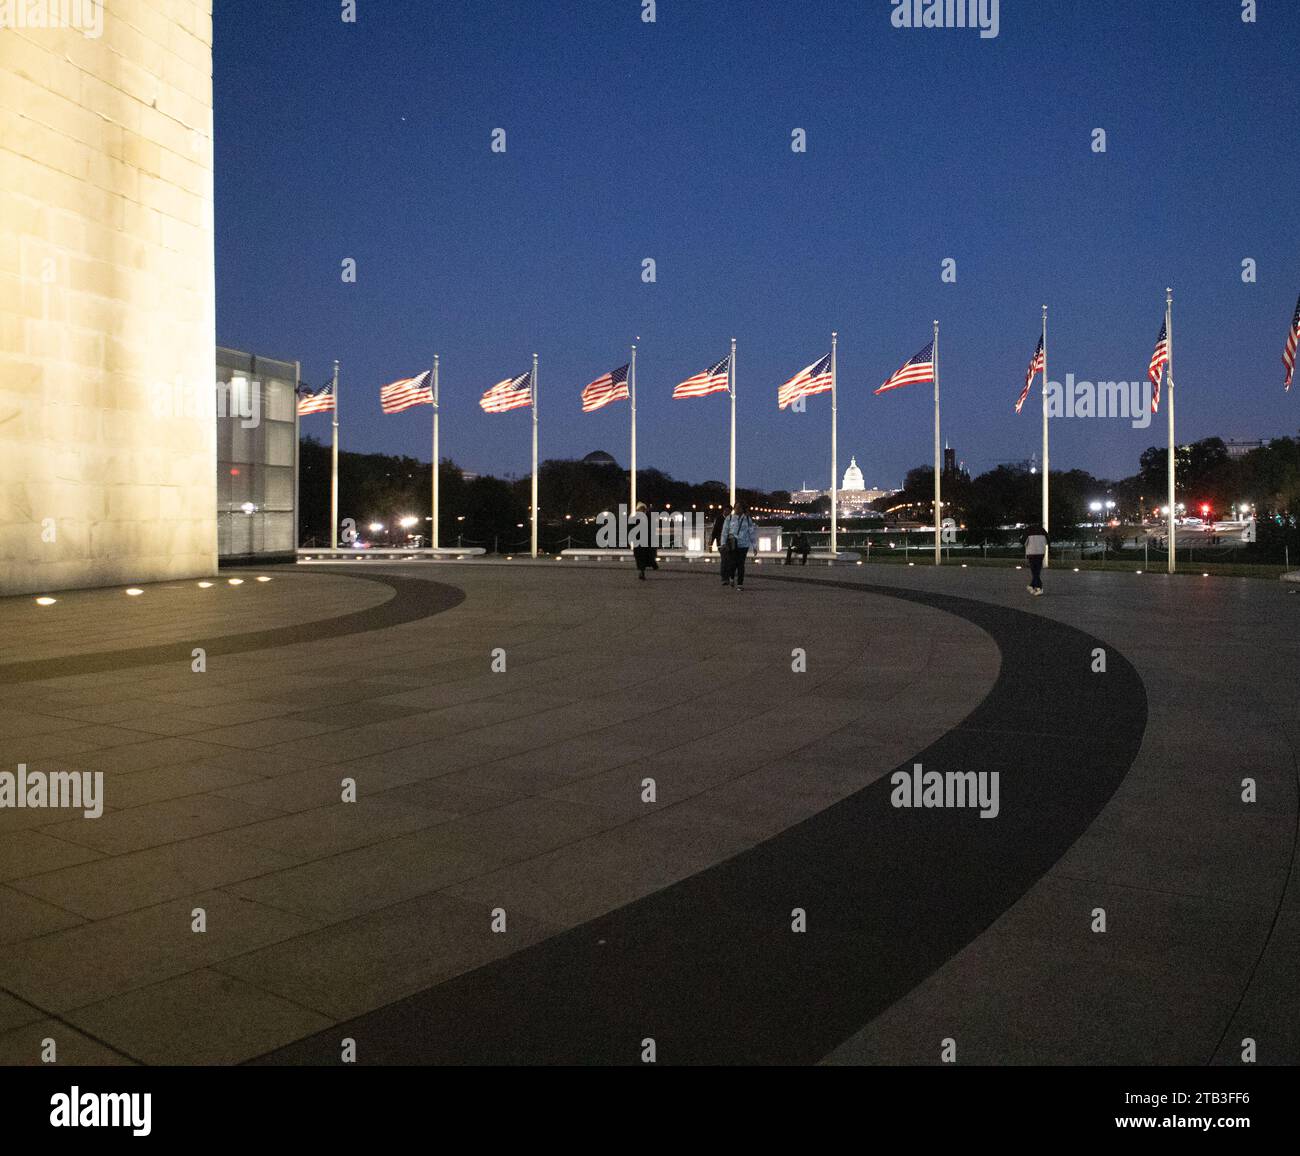 Il Washington Monument è un obelisco sul National Mall di Washington, D.C., raffigurato al crepuscolo con bandiere che lo circondano. Foto Stock